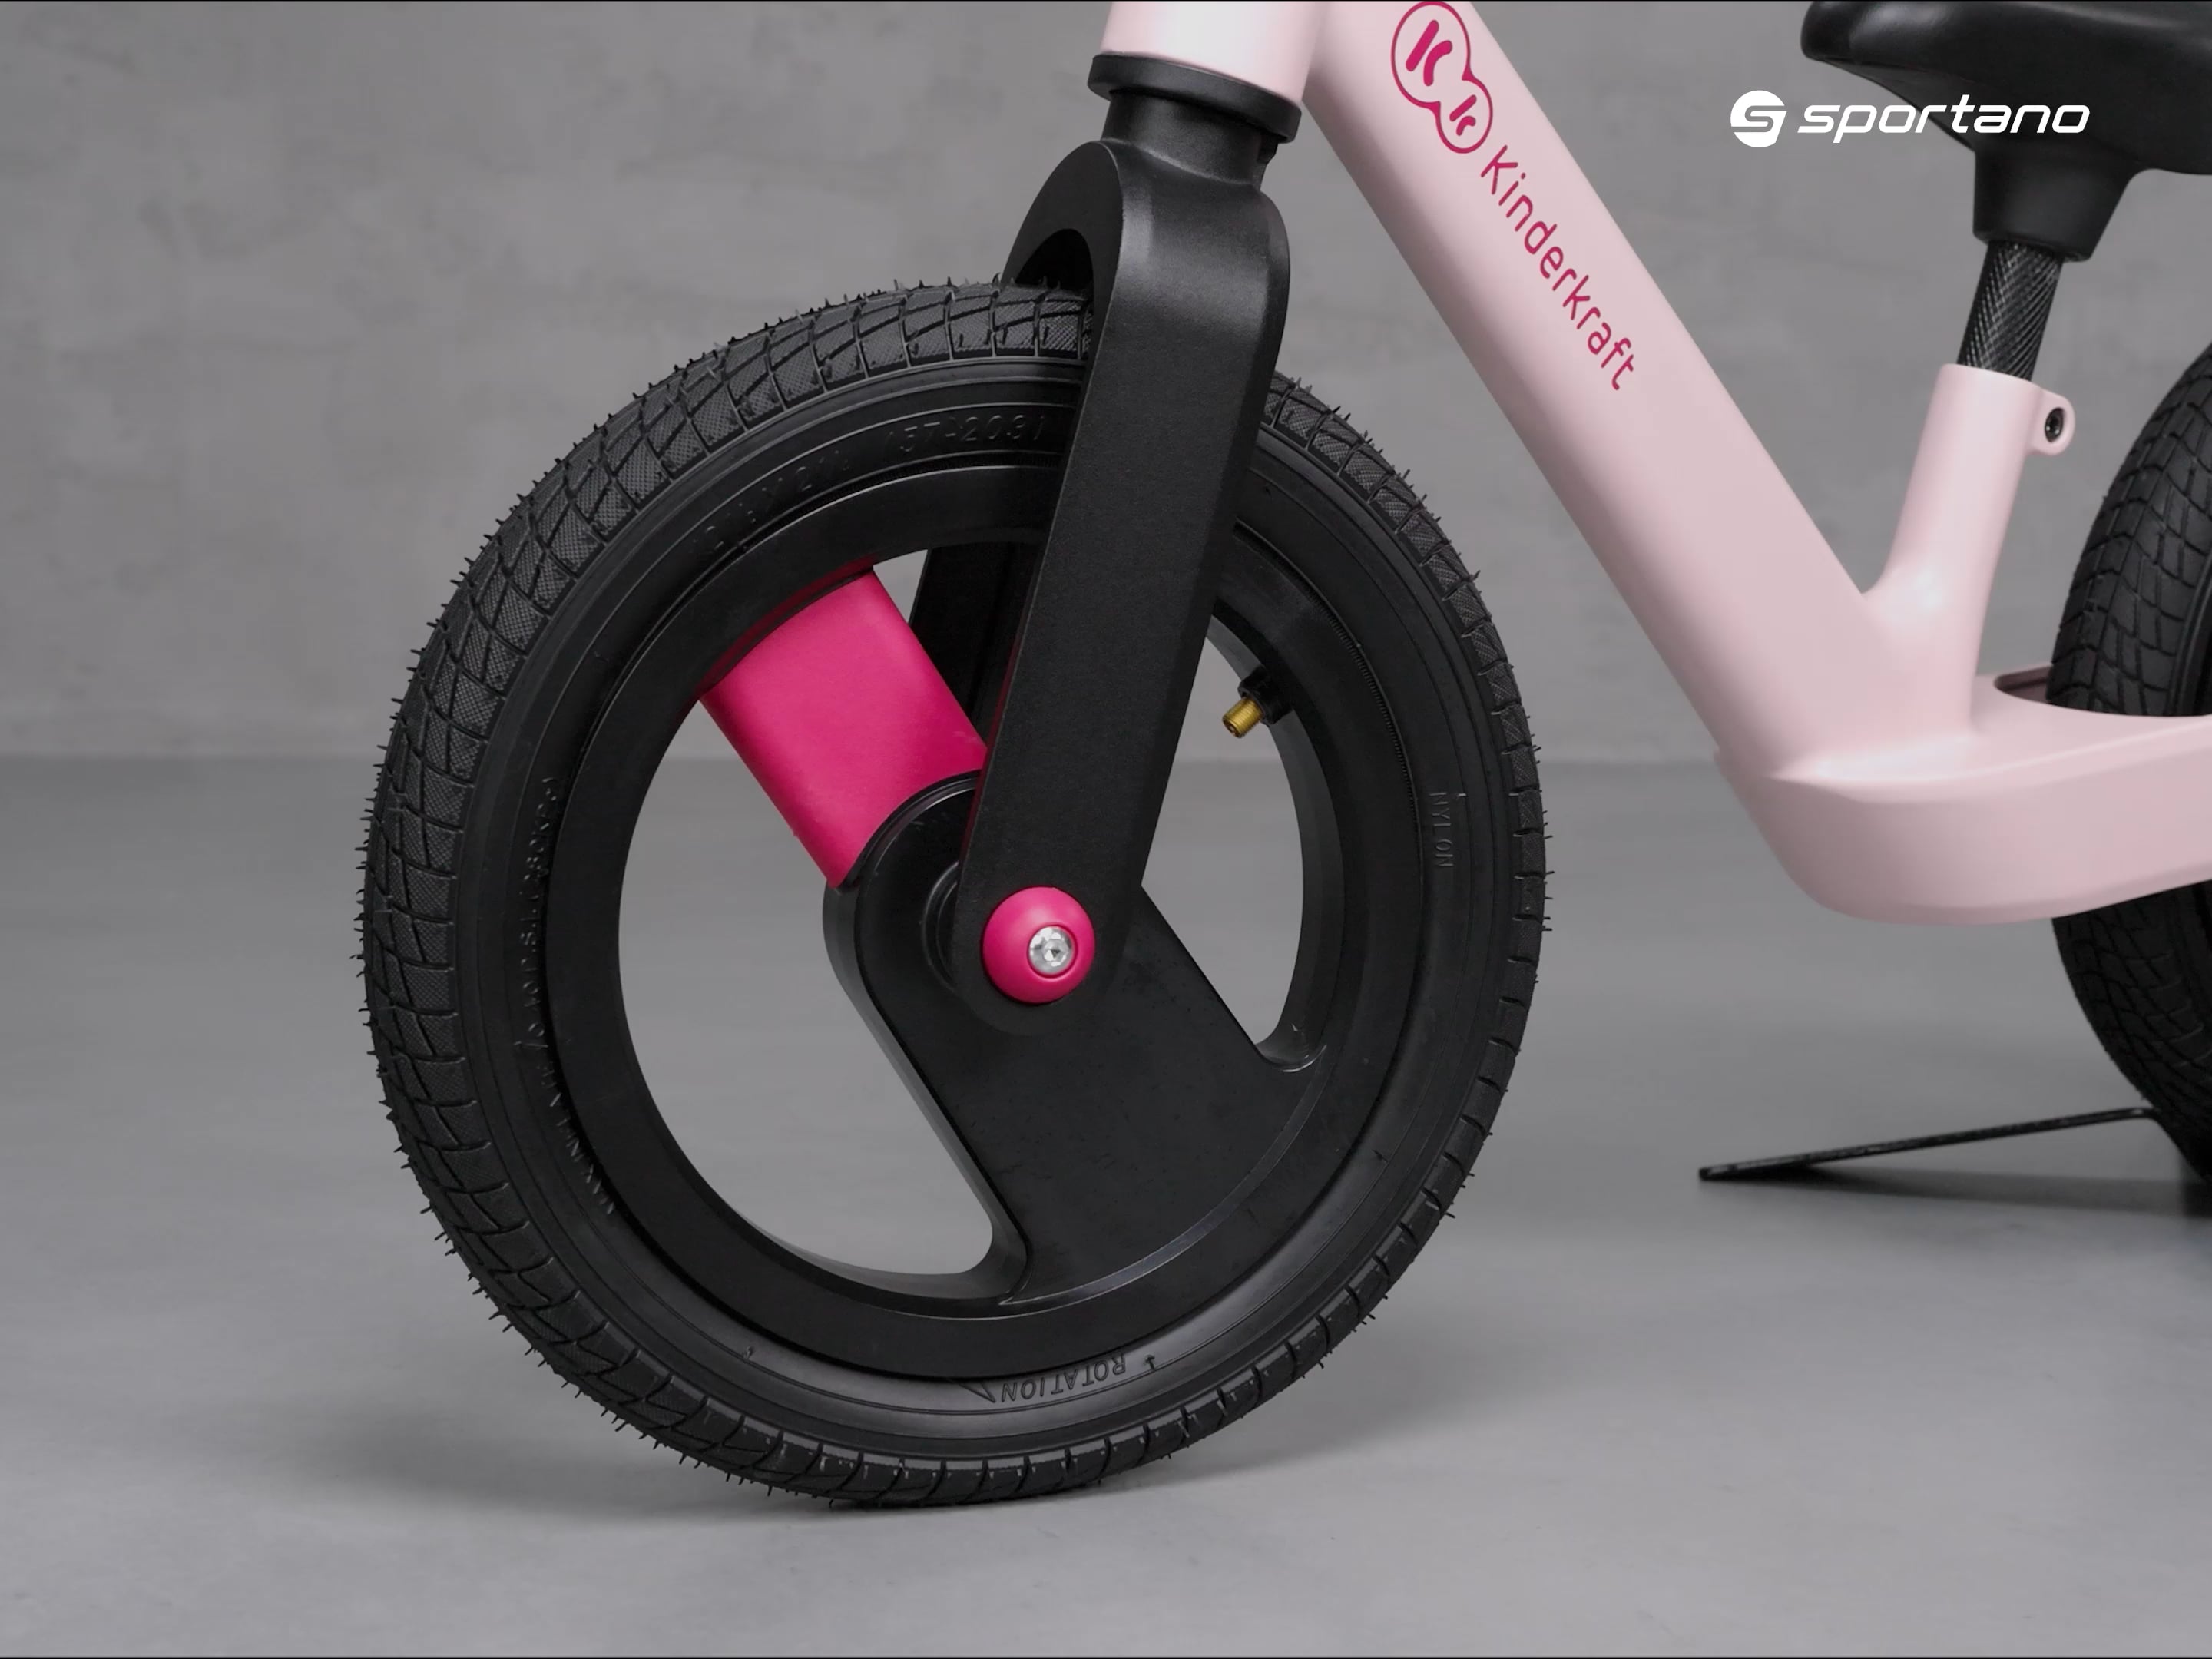 Kinderkraft Goswift krosinis dviratis rožinės spalvos KRGOSW00PNK0000